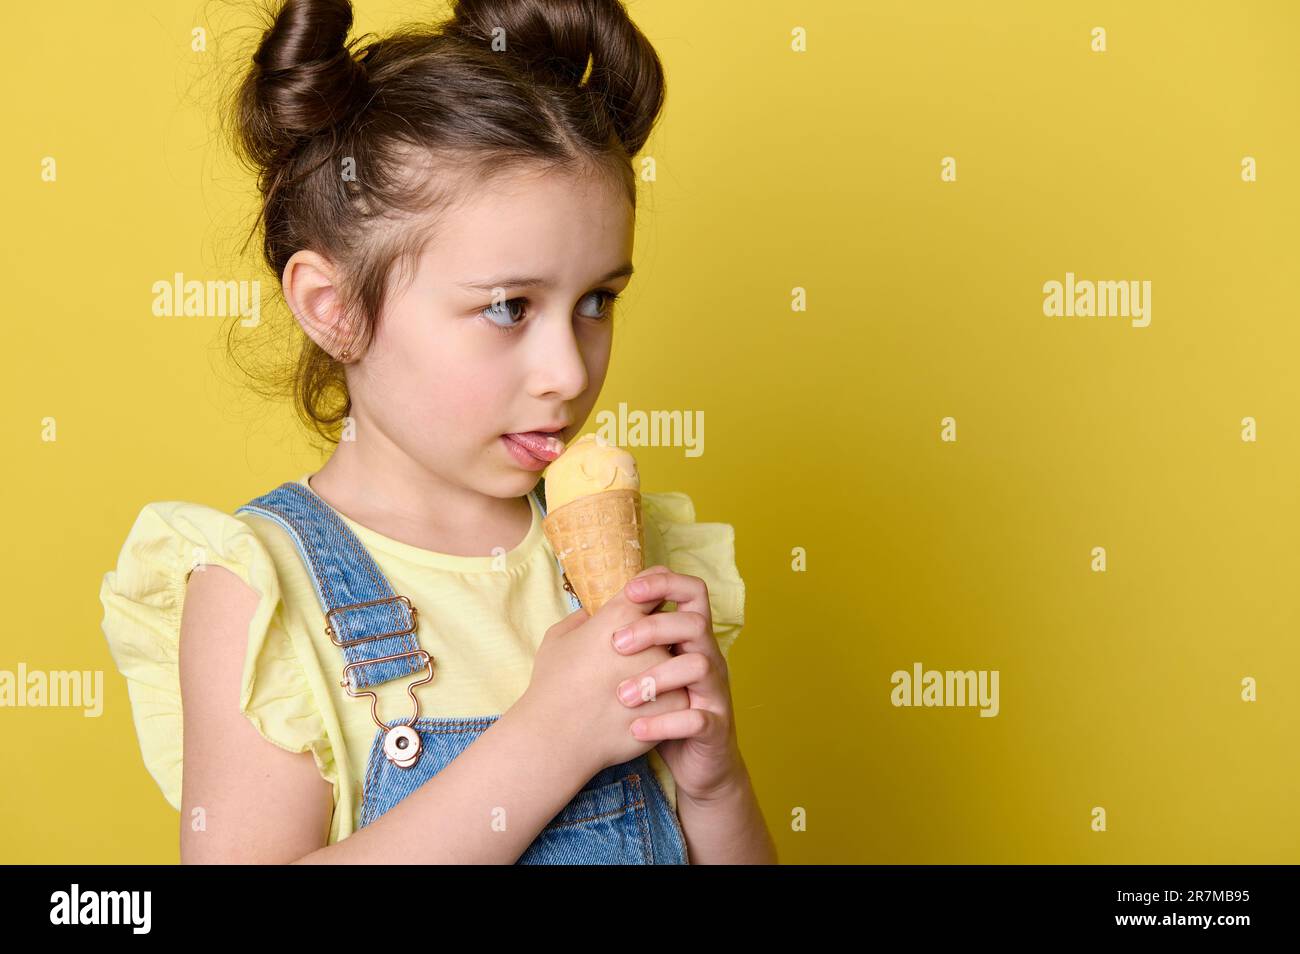 Nahaufnahme eines kleinen Mädchens, das eine Eiskugel in Waffeleisen leckt und einen Kopierbereich auf gelbem Hintergrund zur Seite blickt Stockfoto